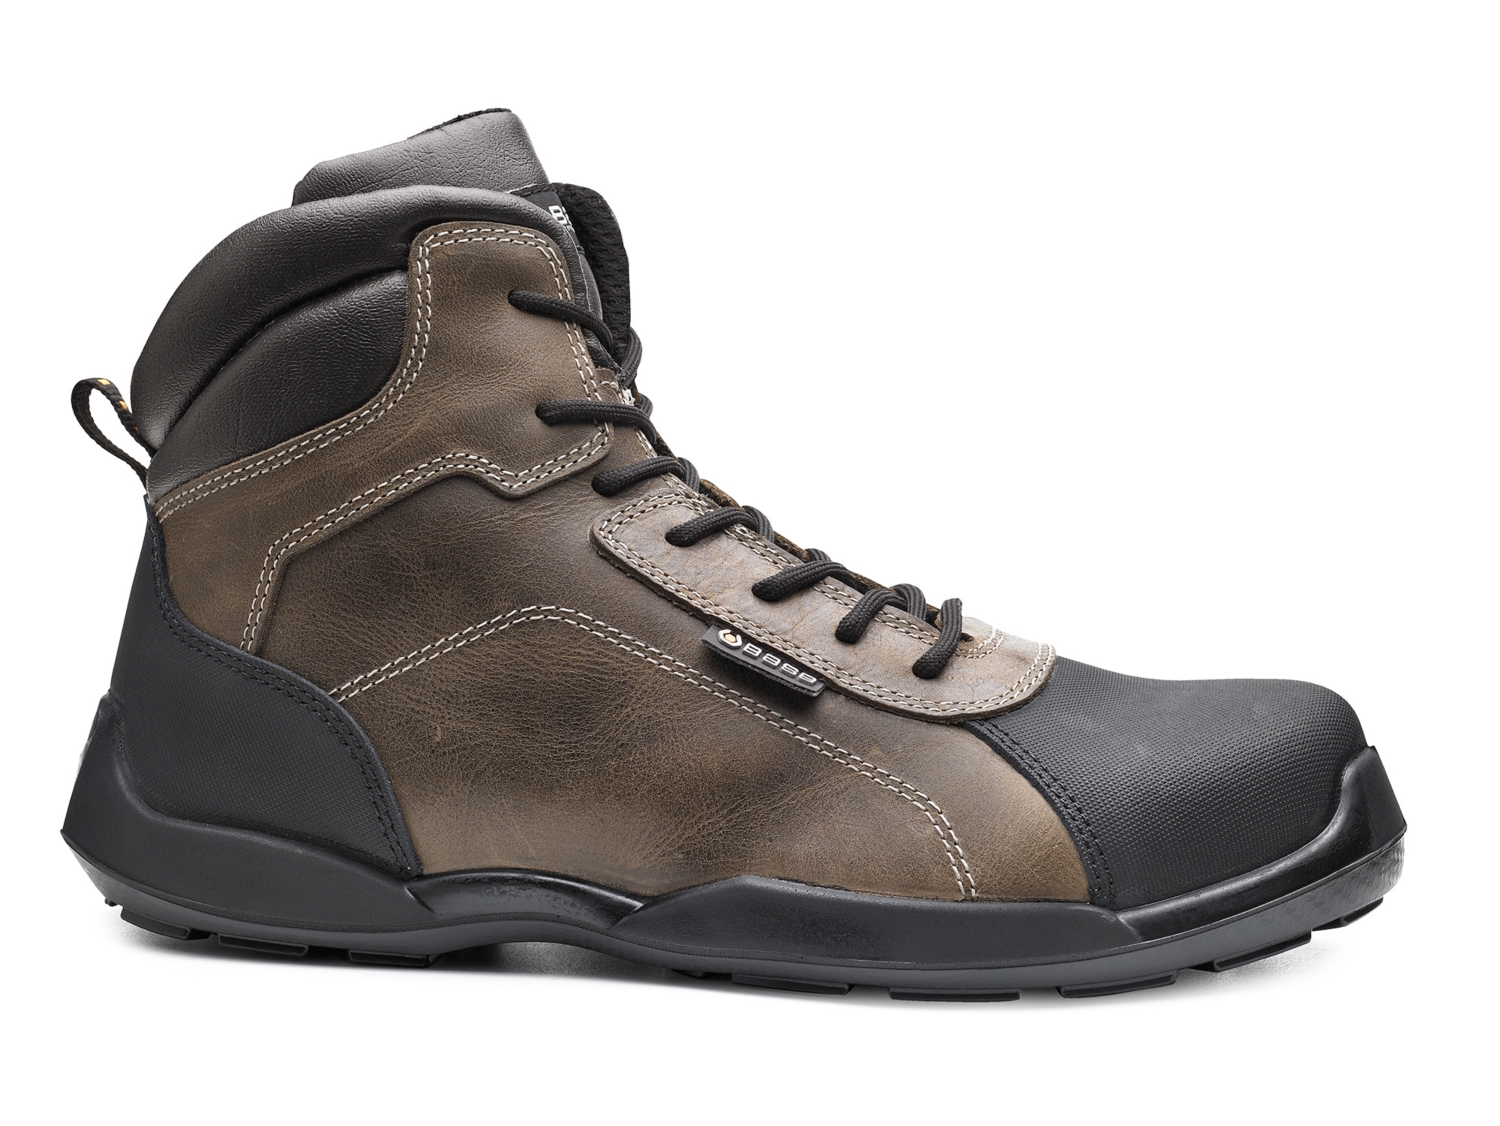 JMKA Chaussures de sécurité - WATERPROOF - chaussures de travail -  chaussures de